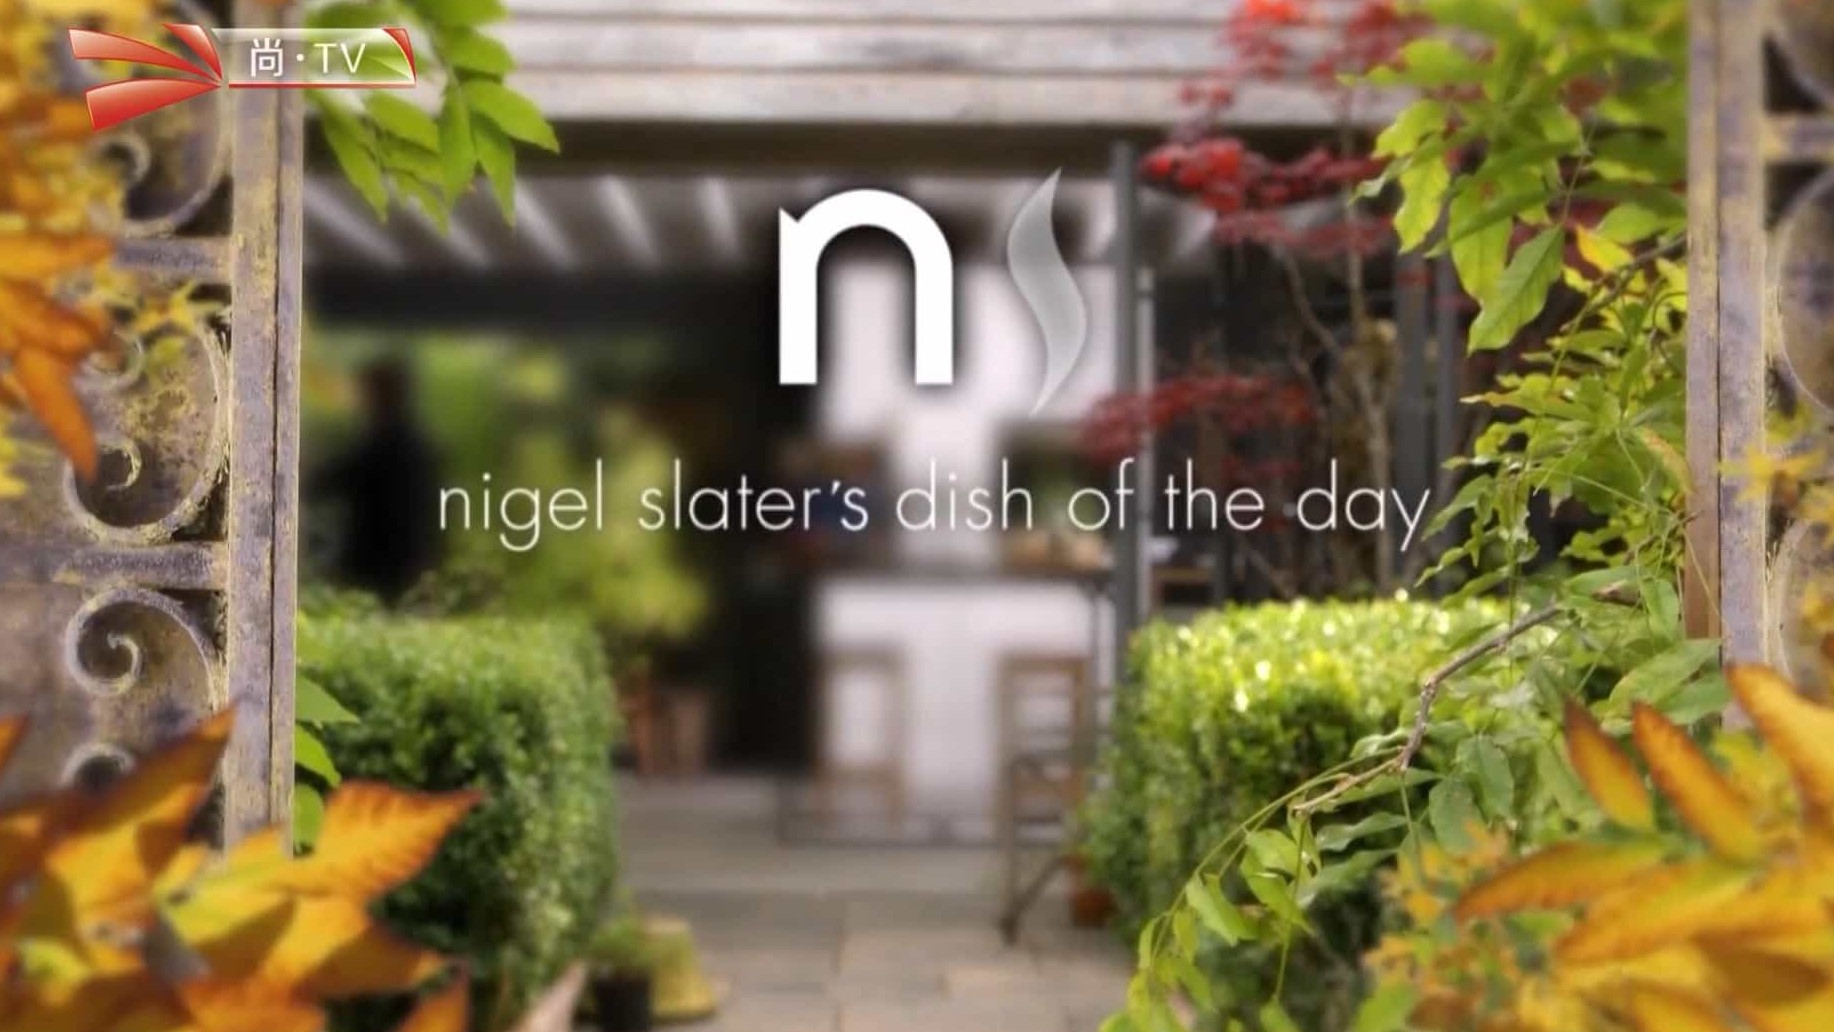 尚TV/BBC美食纪录片/世界美食系列《奈杰尔·斯莱特的每日佳肴 Nigel Slater’s Dish Of The Day 2012》全8集 国语中字 BTV引进版 1080i高清下载